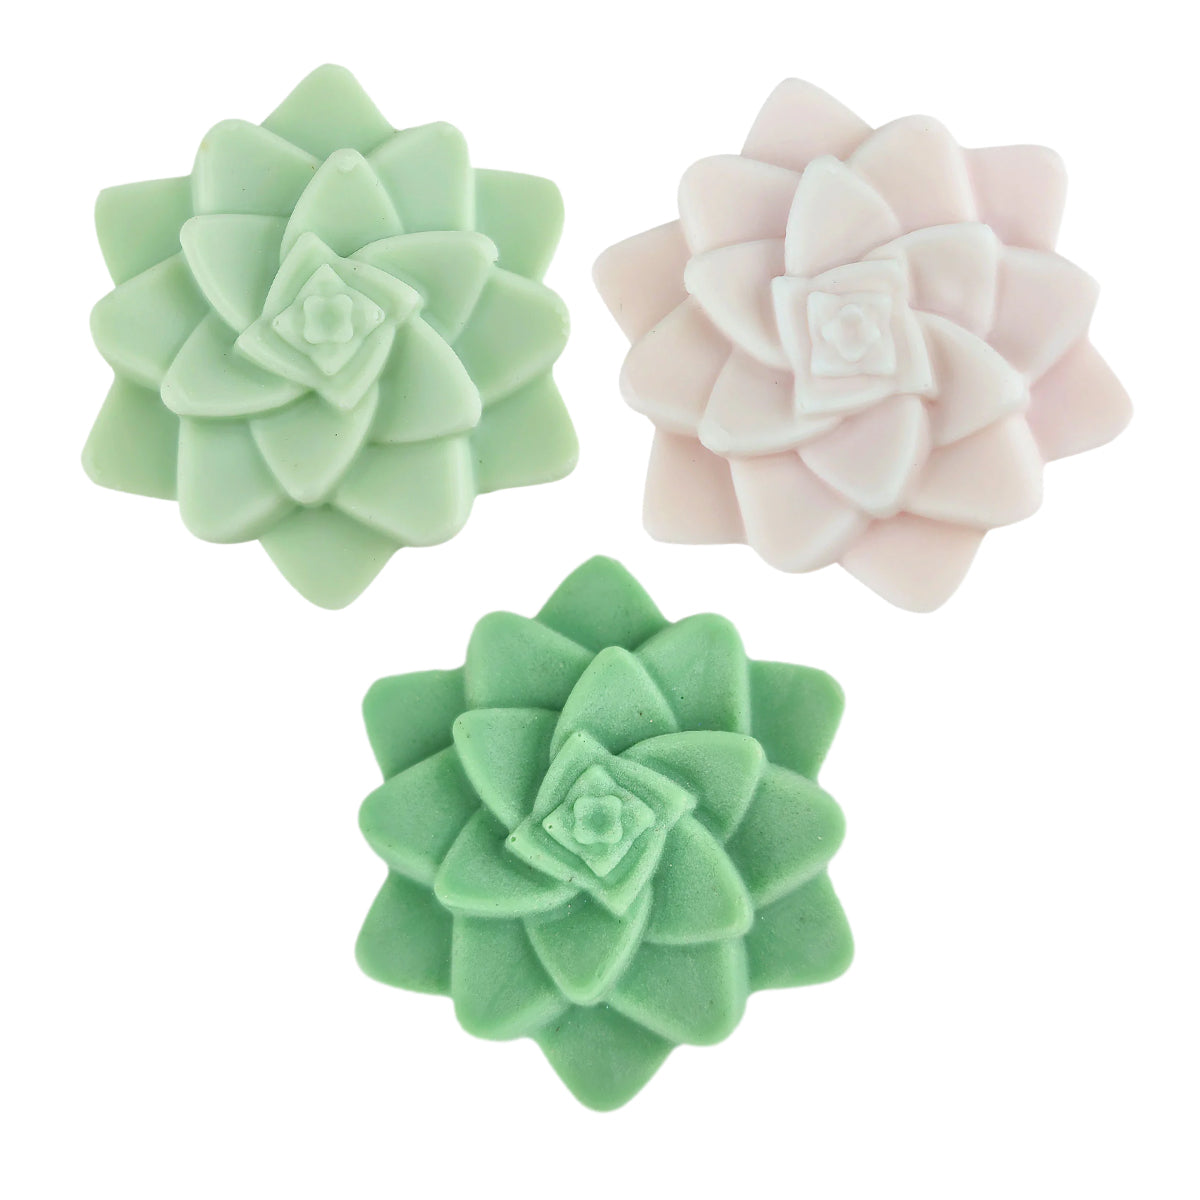 Set of 3 Rosette Succulent Soaps Mix 3 Colors, Artisan Succulent Soap for sale, Perfect Gift Ideas